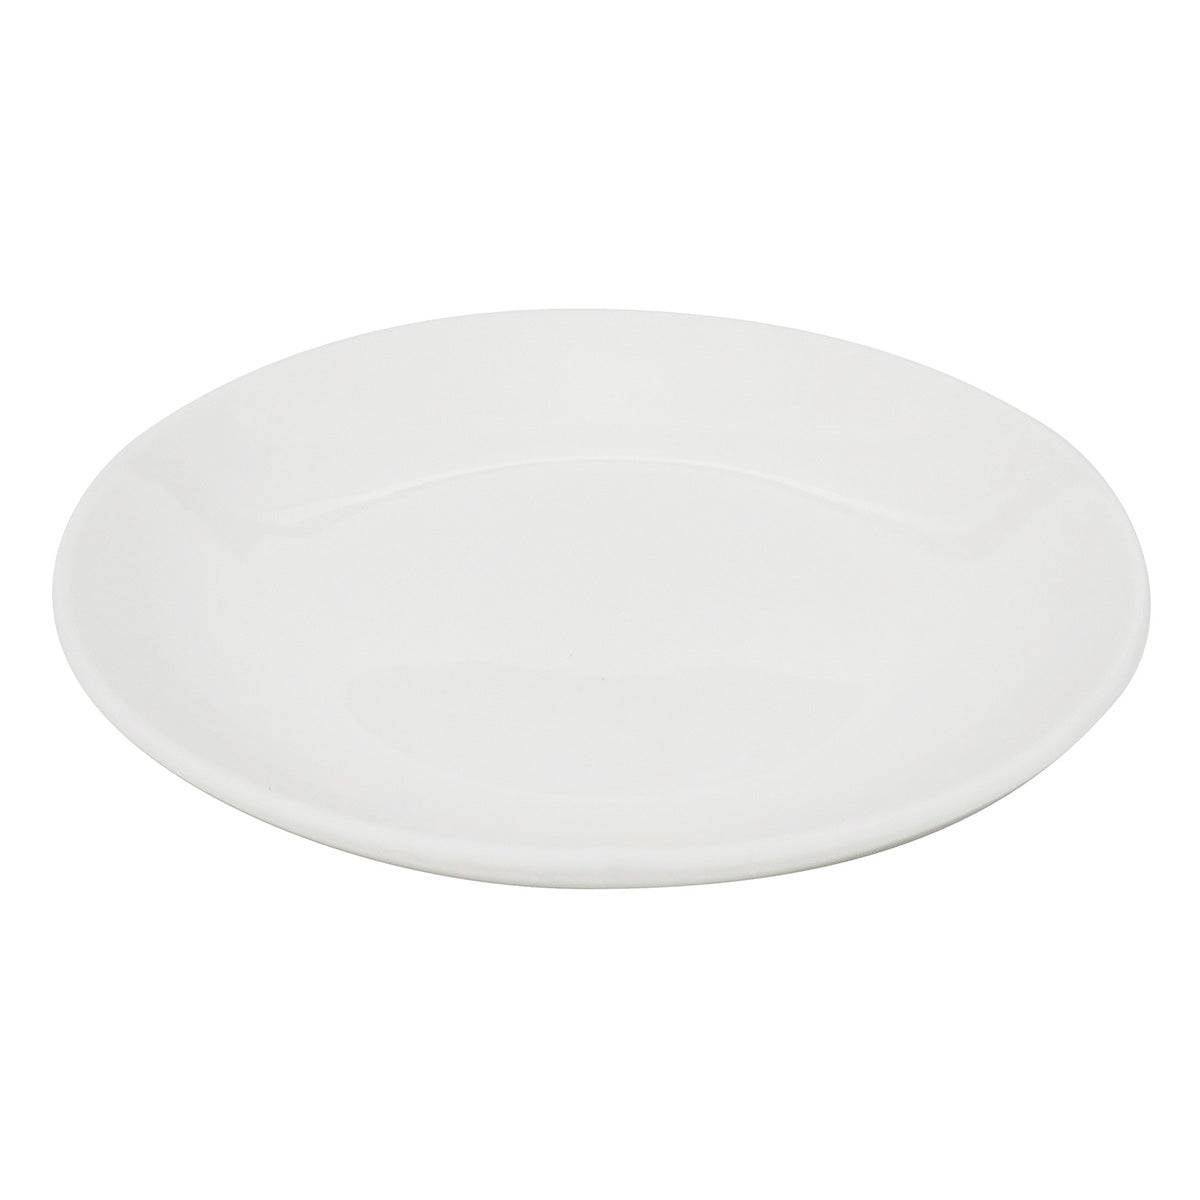 【OUTLET】皿 小皿 シンプル 12.5cm 白 355656